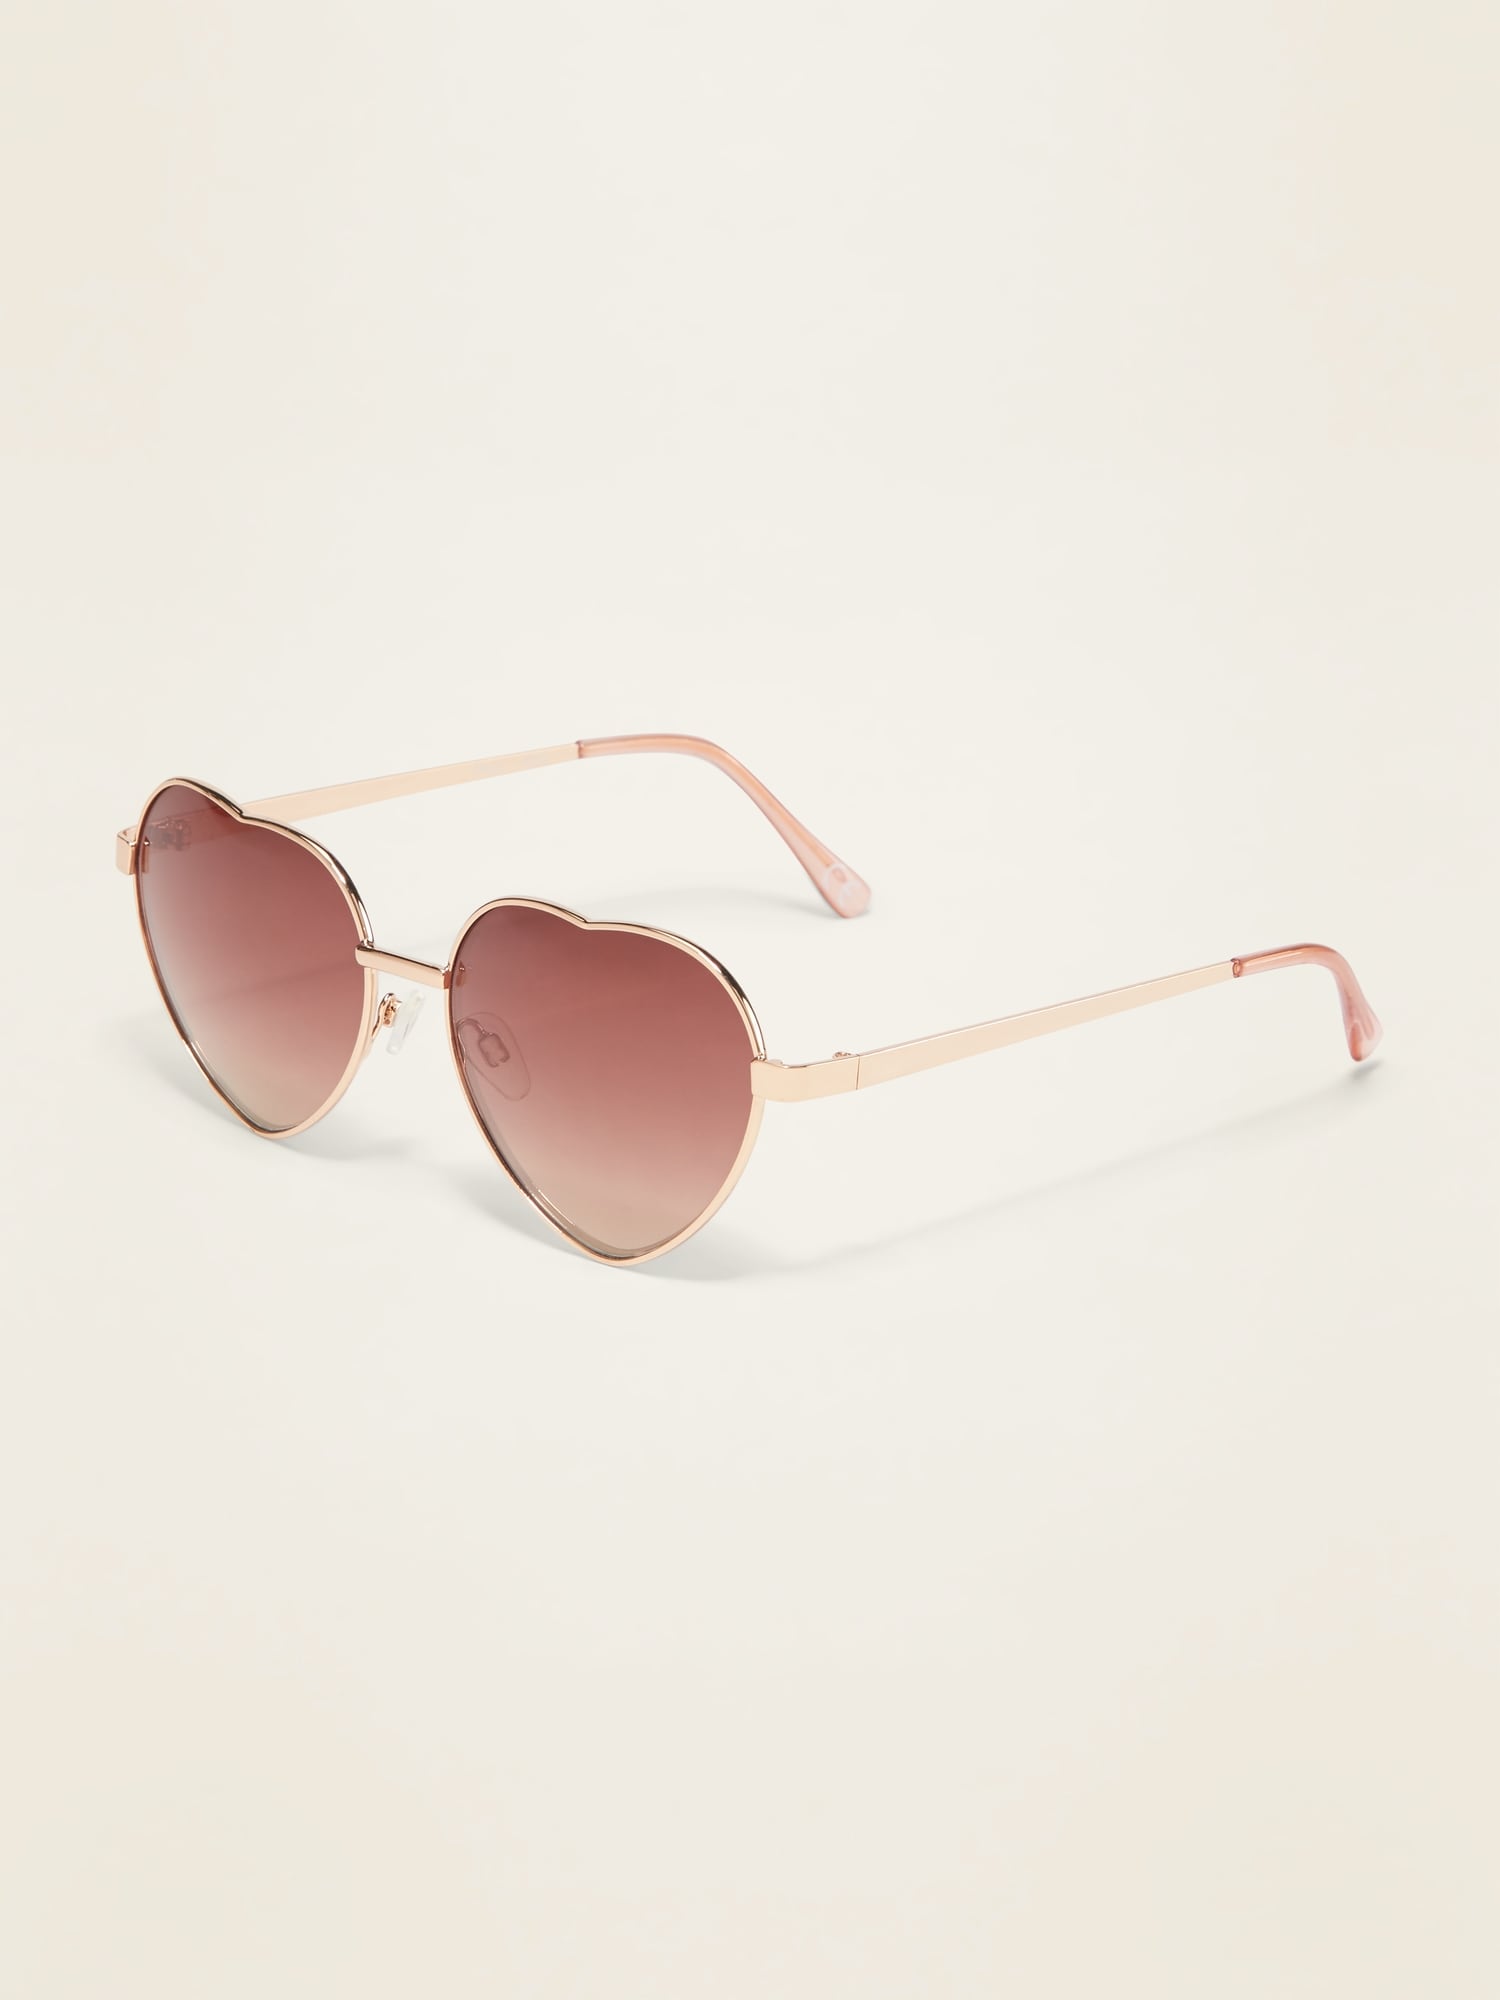 Cat-Eye Sunglasses for Women | Old Navy